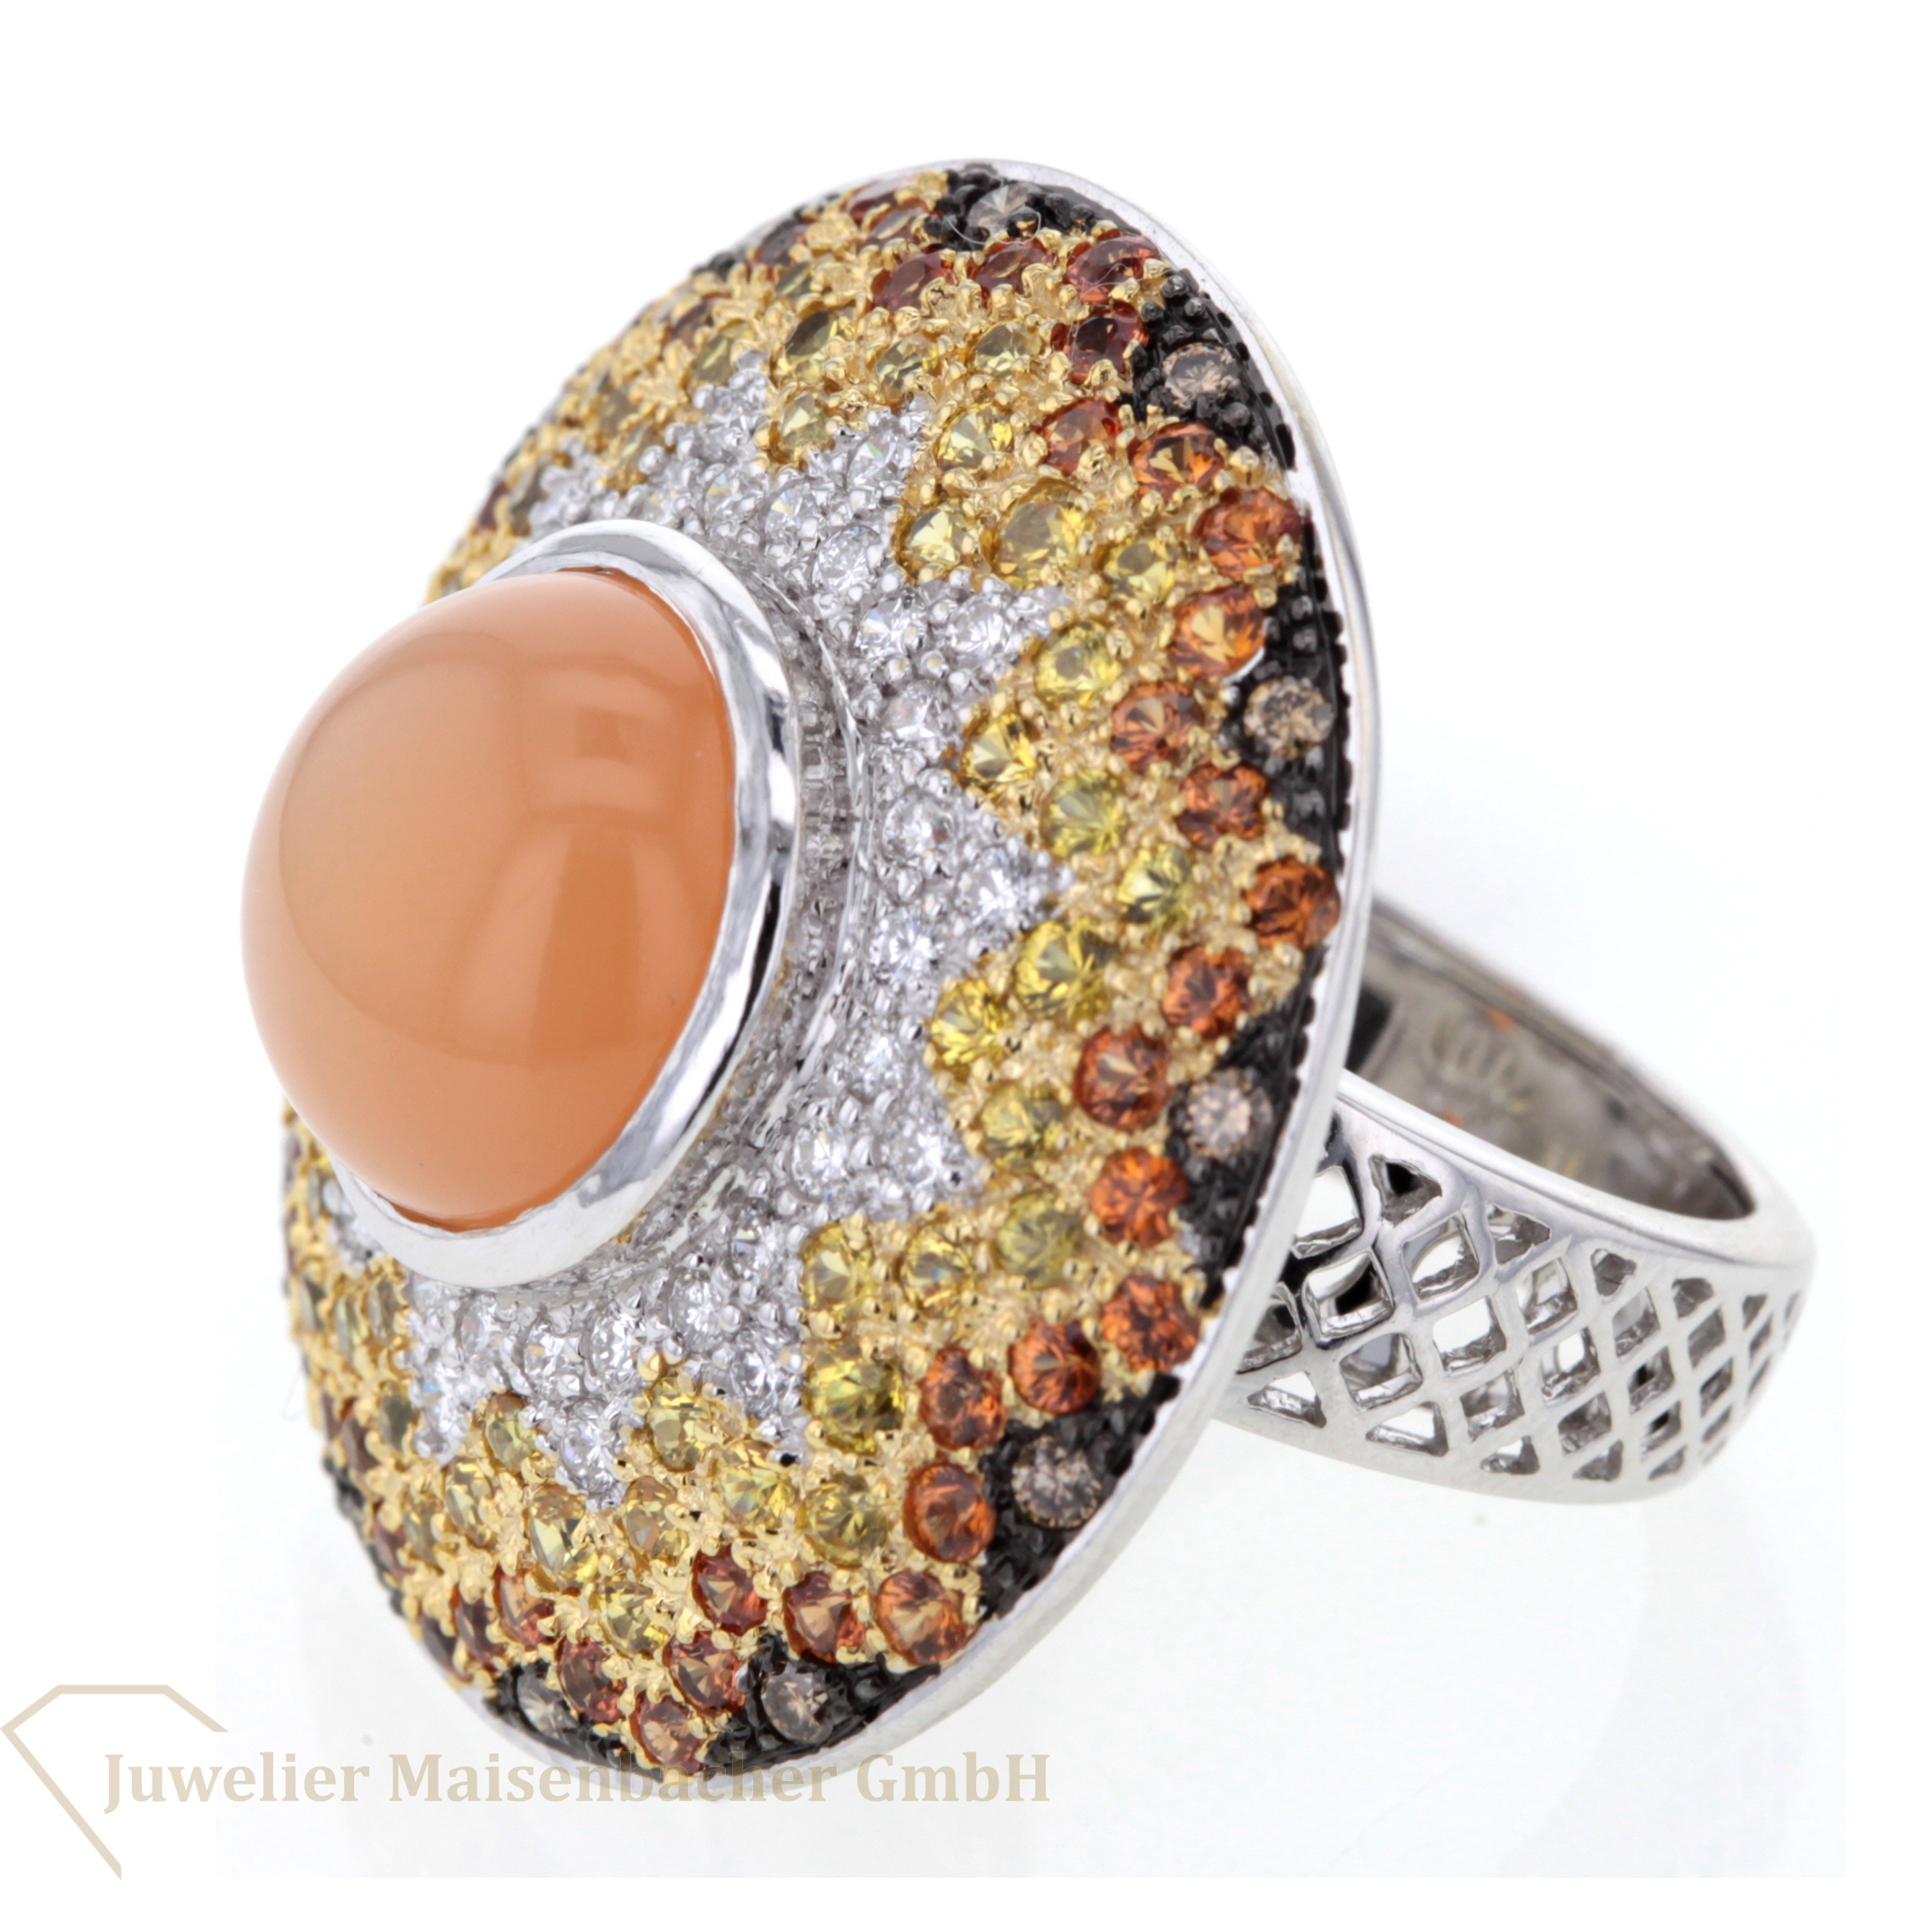 Statementring/Ring mit farbigen Diamanten und Mondstein Gold